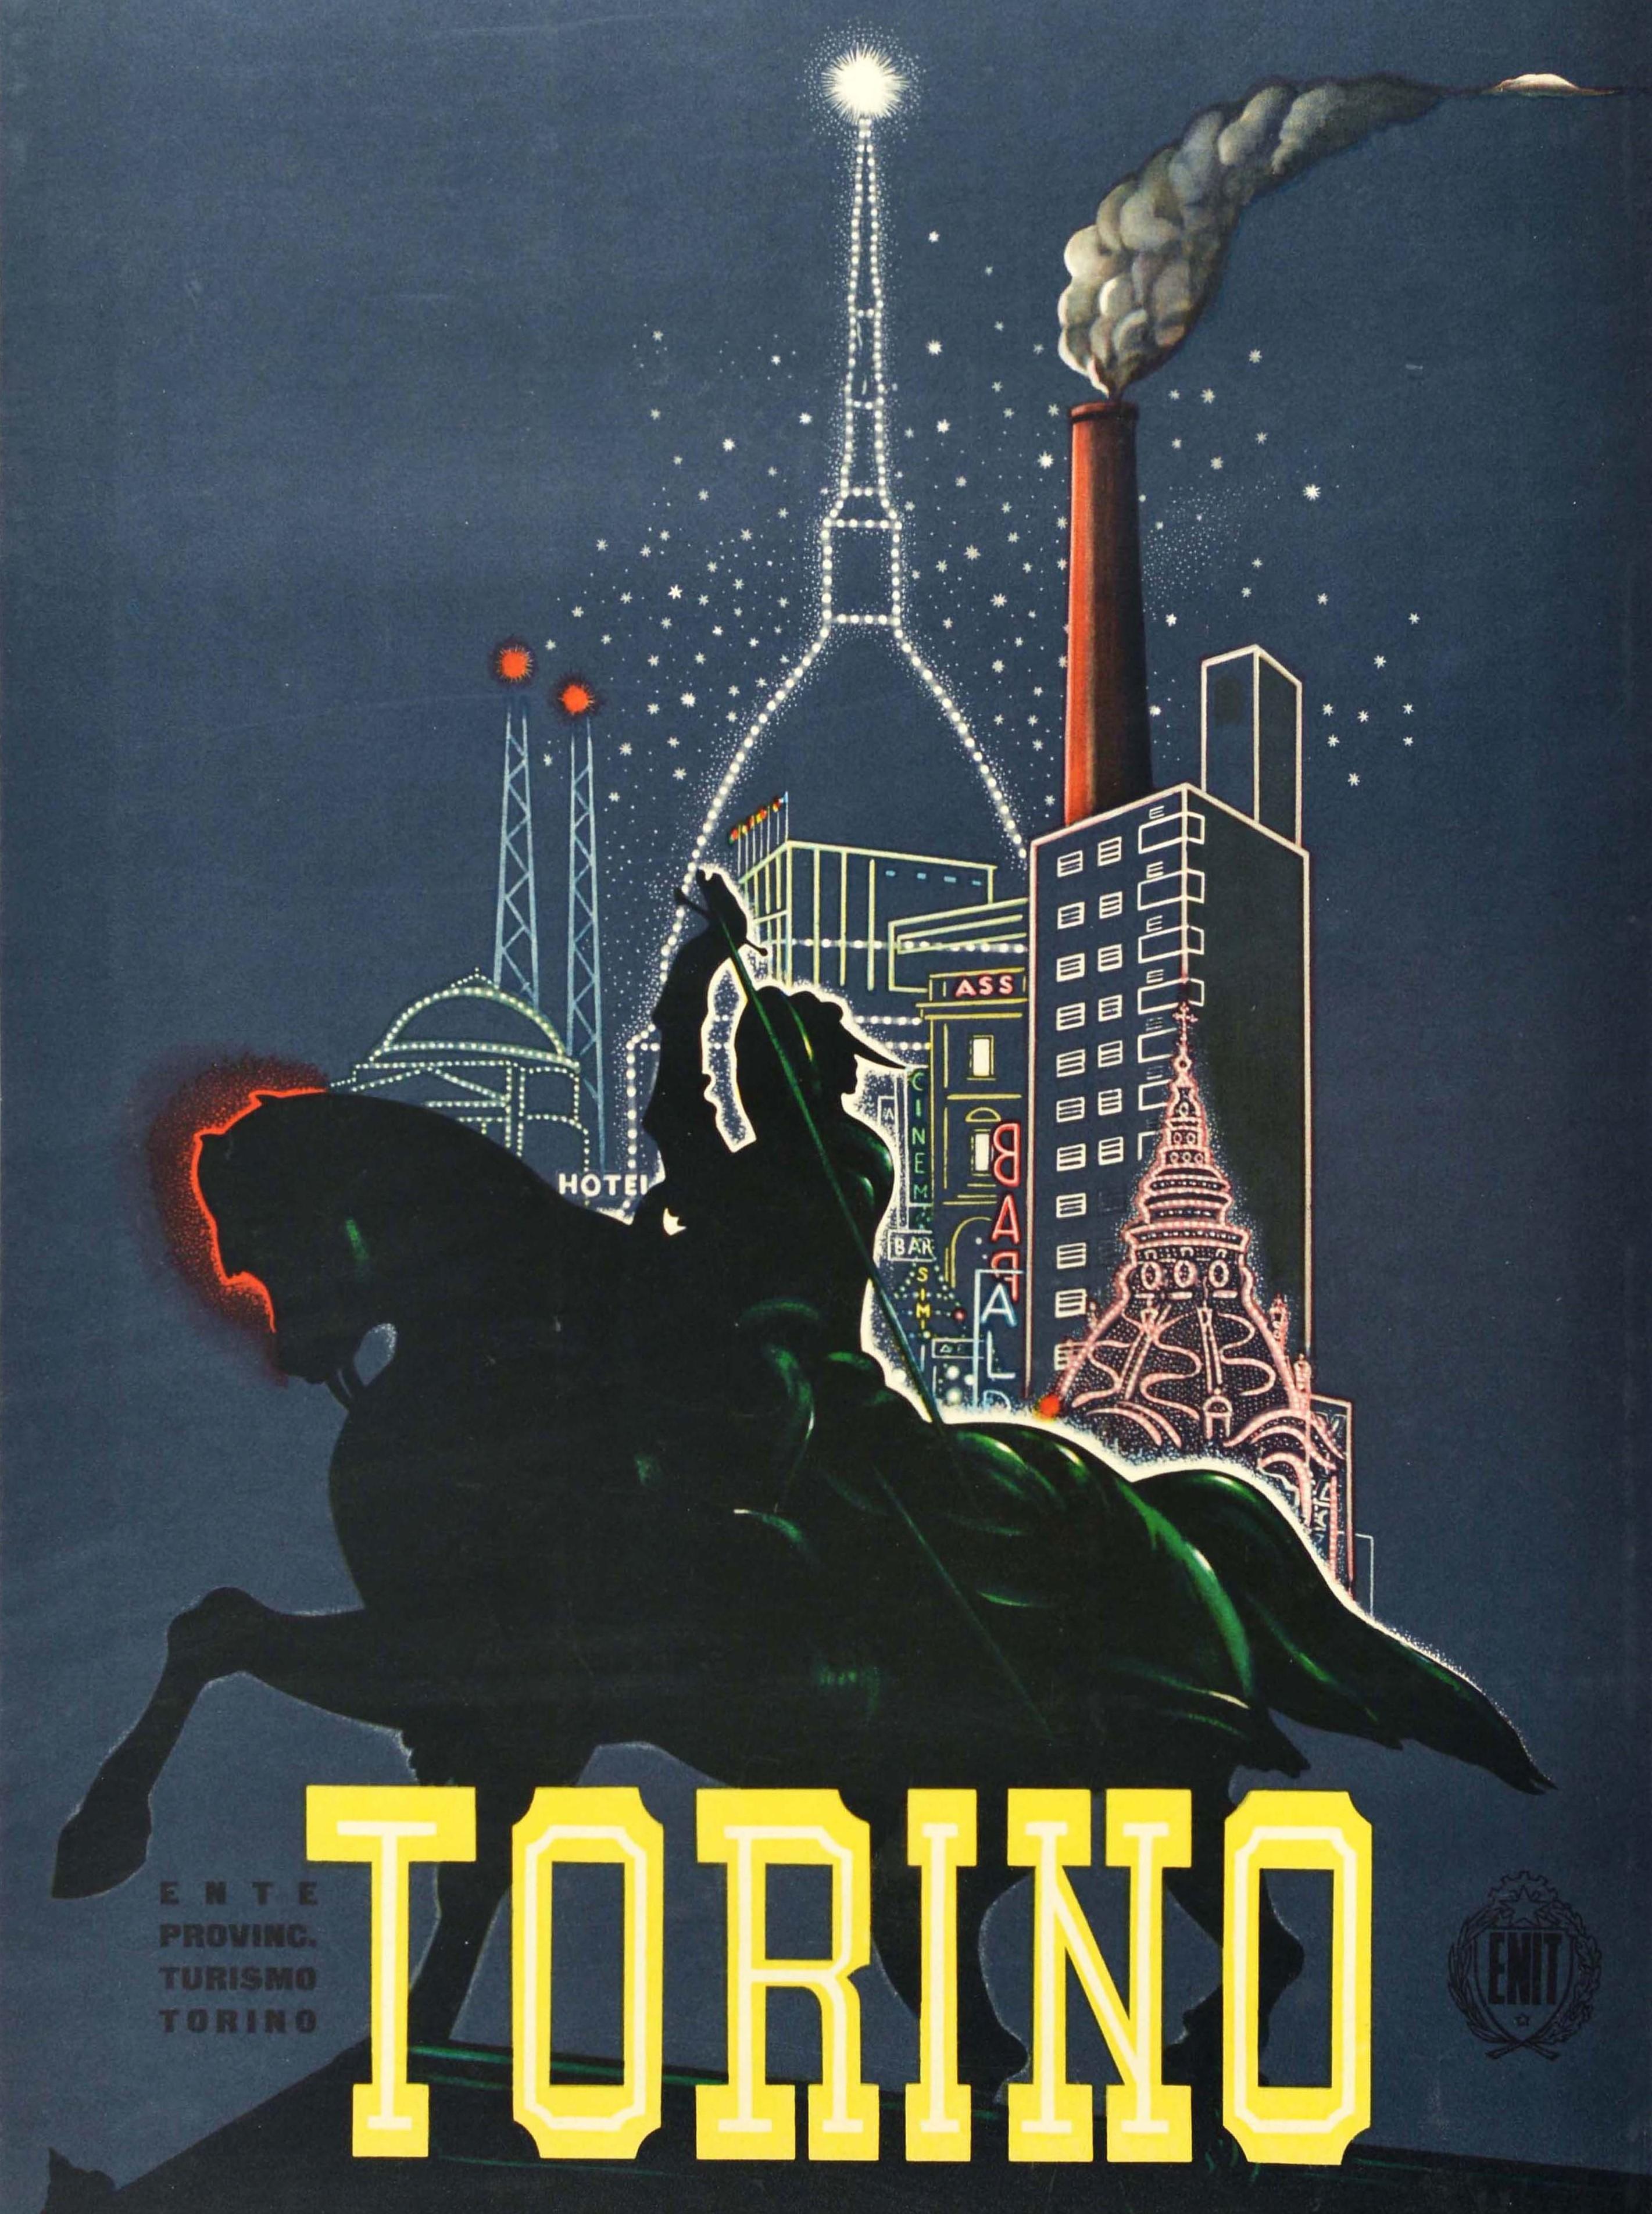 poster vintage torino